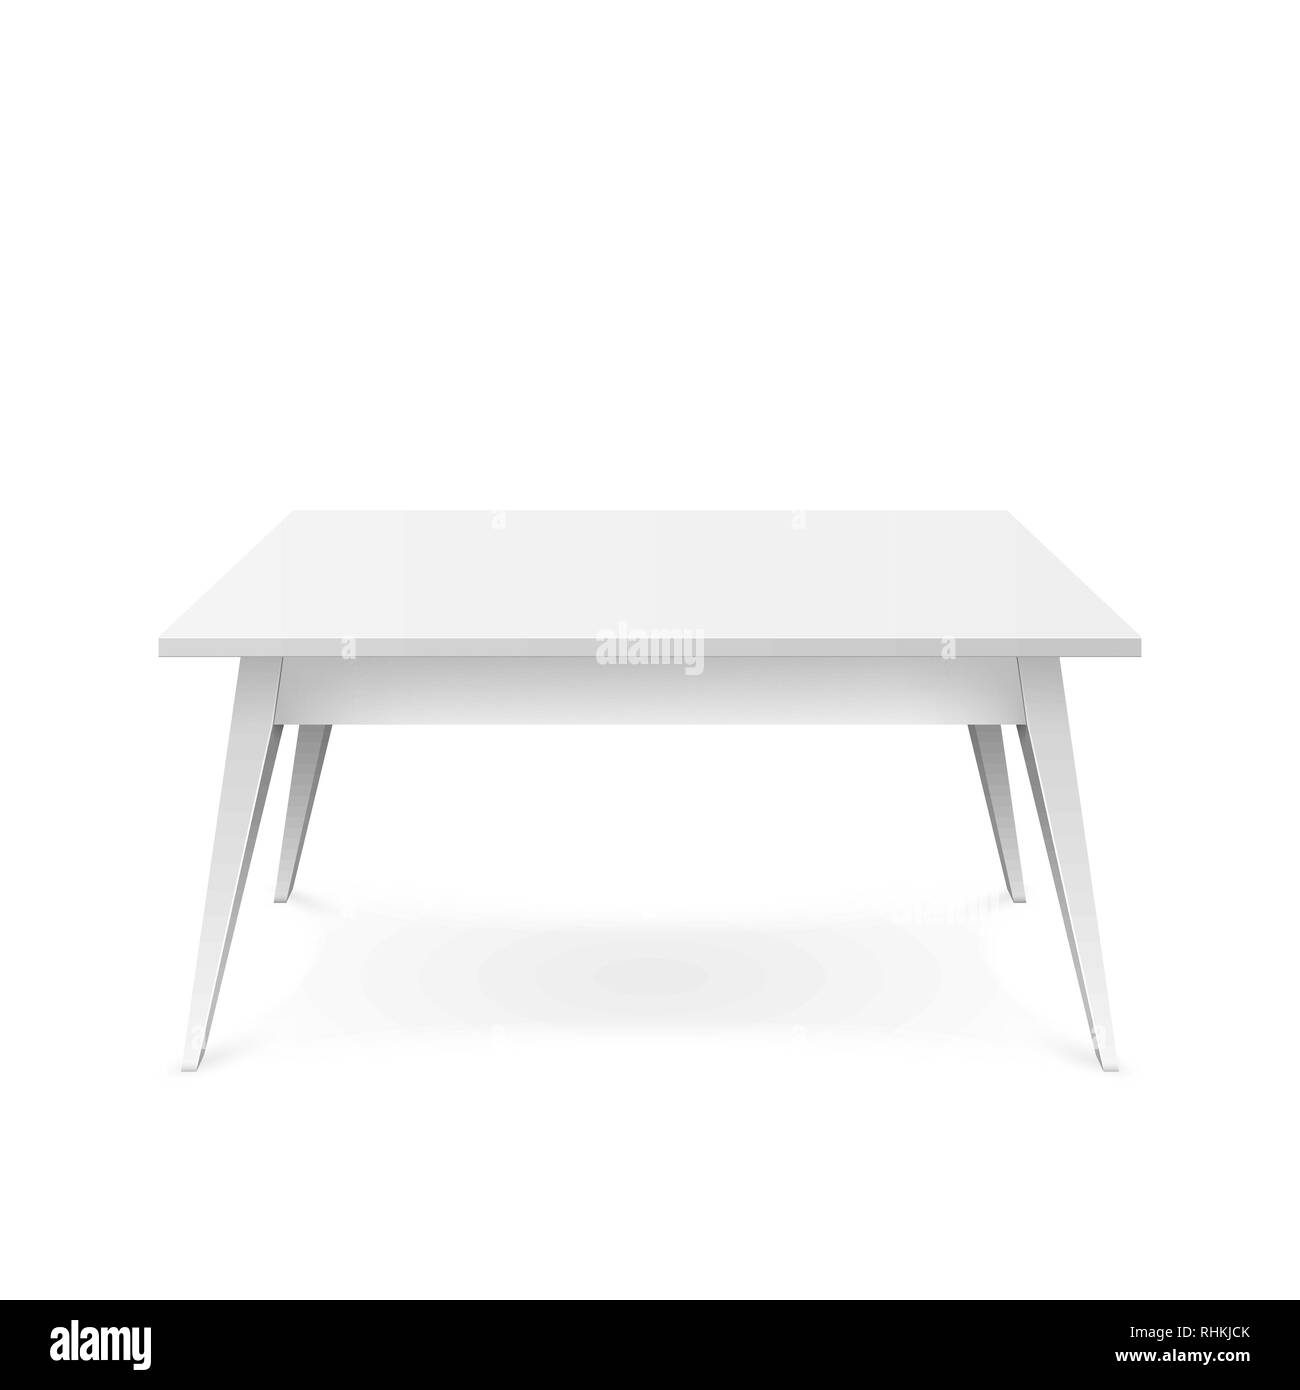 Tableau blanc réaliste. Table bureau blanc avec l'ombre. Vector illustration isolé sur fond blanc Illustration de Vecteur